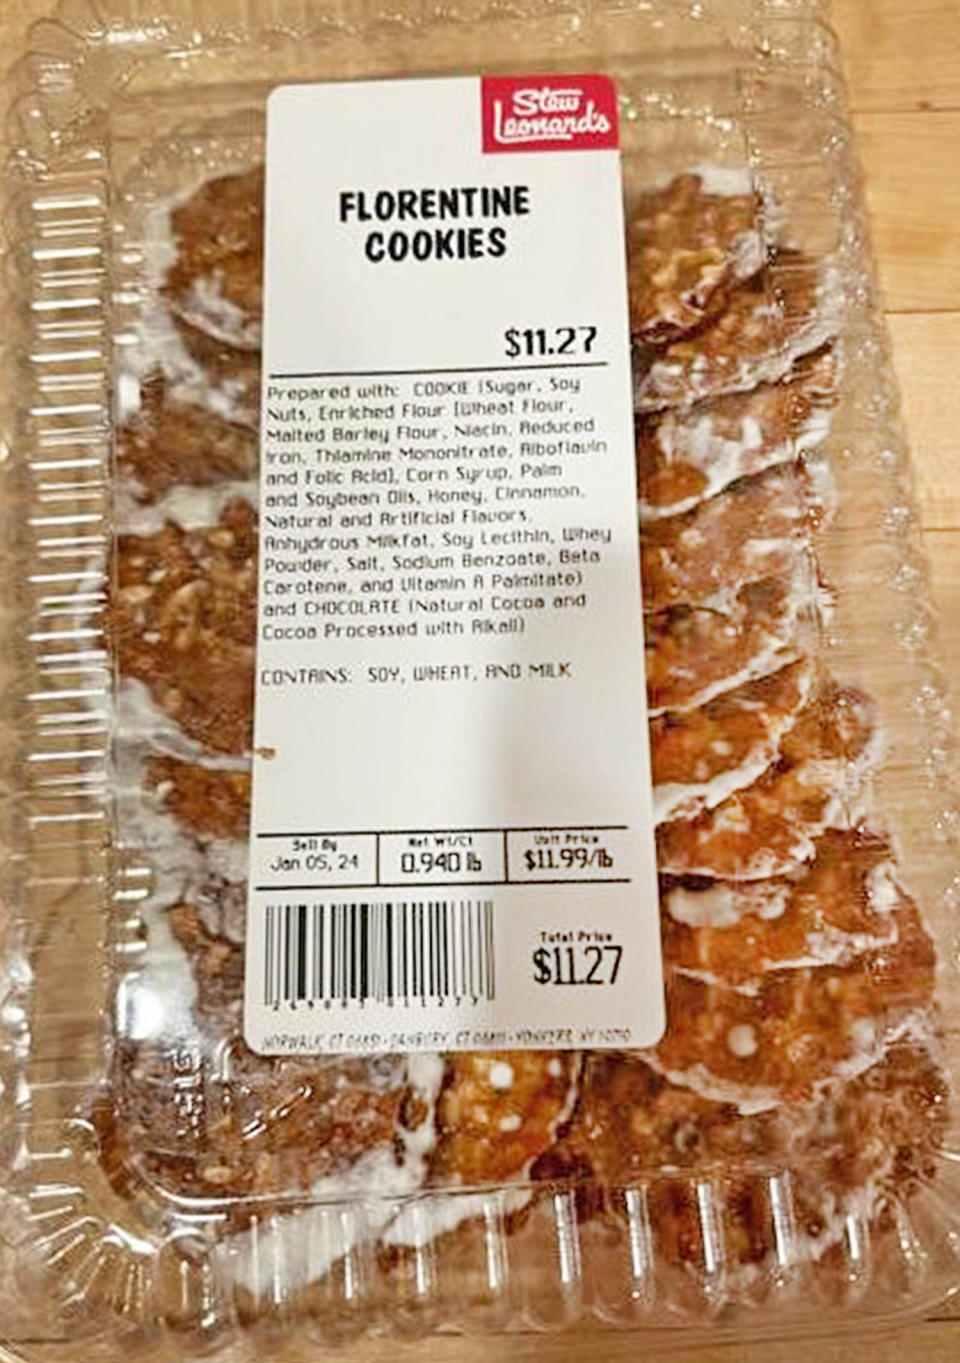 Recalled Florentine cookies sold at Stew Leonard's. (Stew Leonard’s)